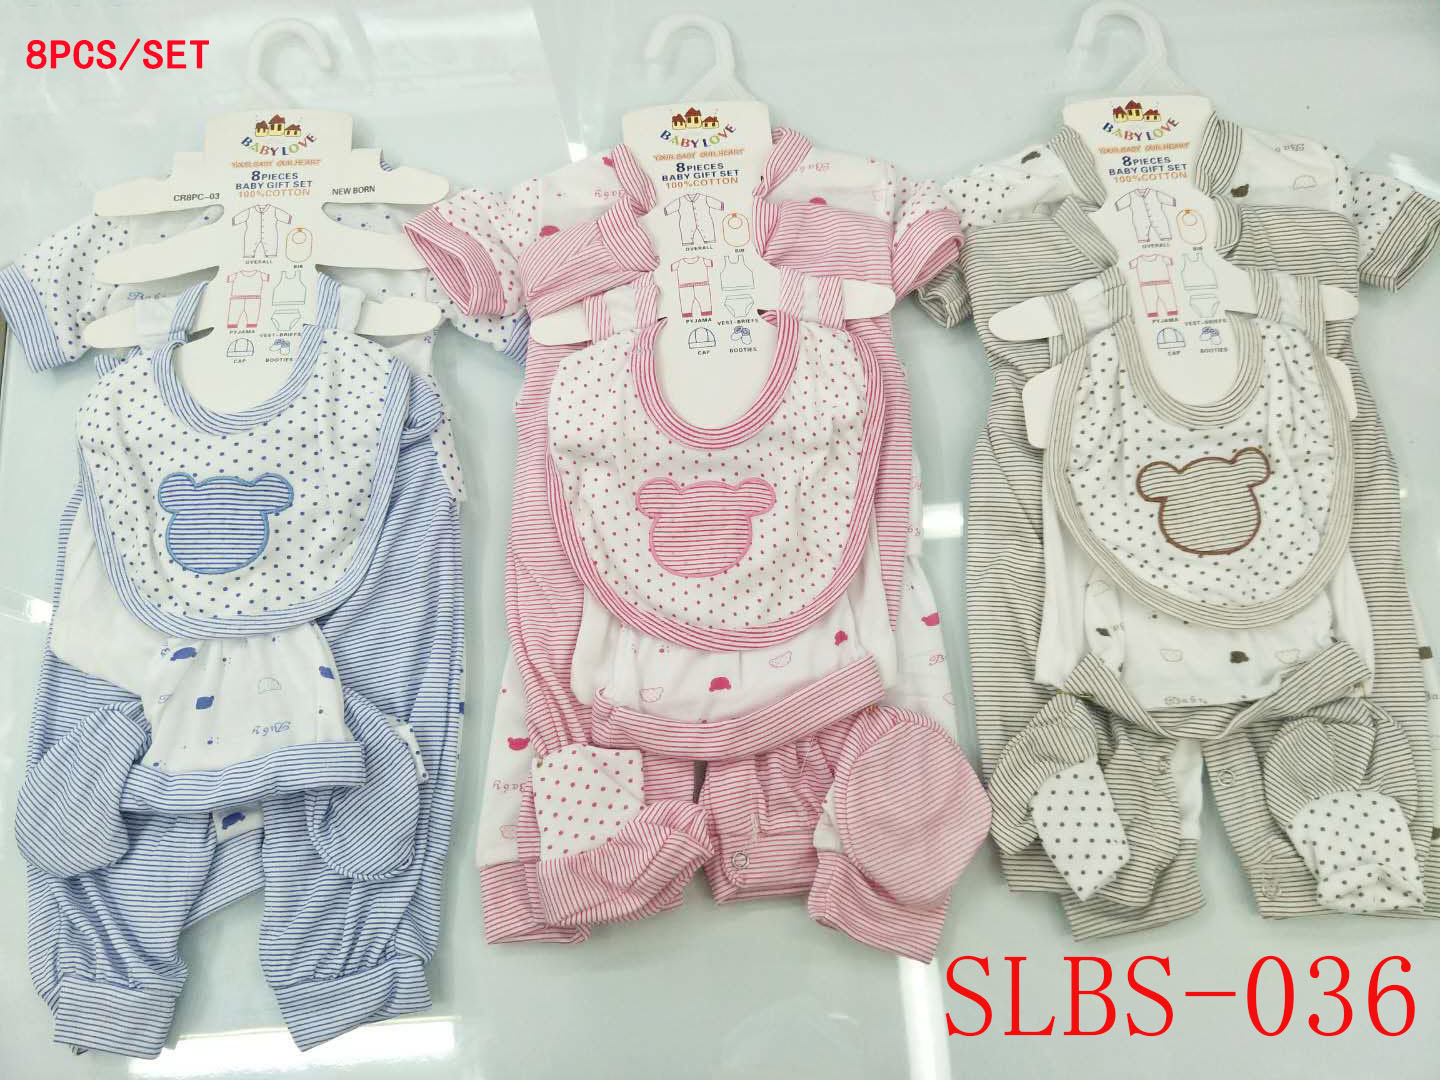 婴儿8件套/婴儿哈衣/婴儿套装产品图